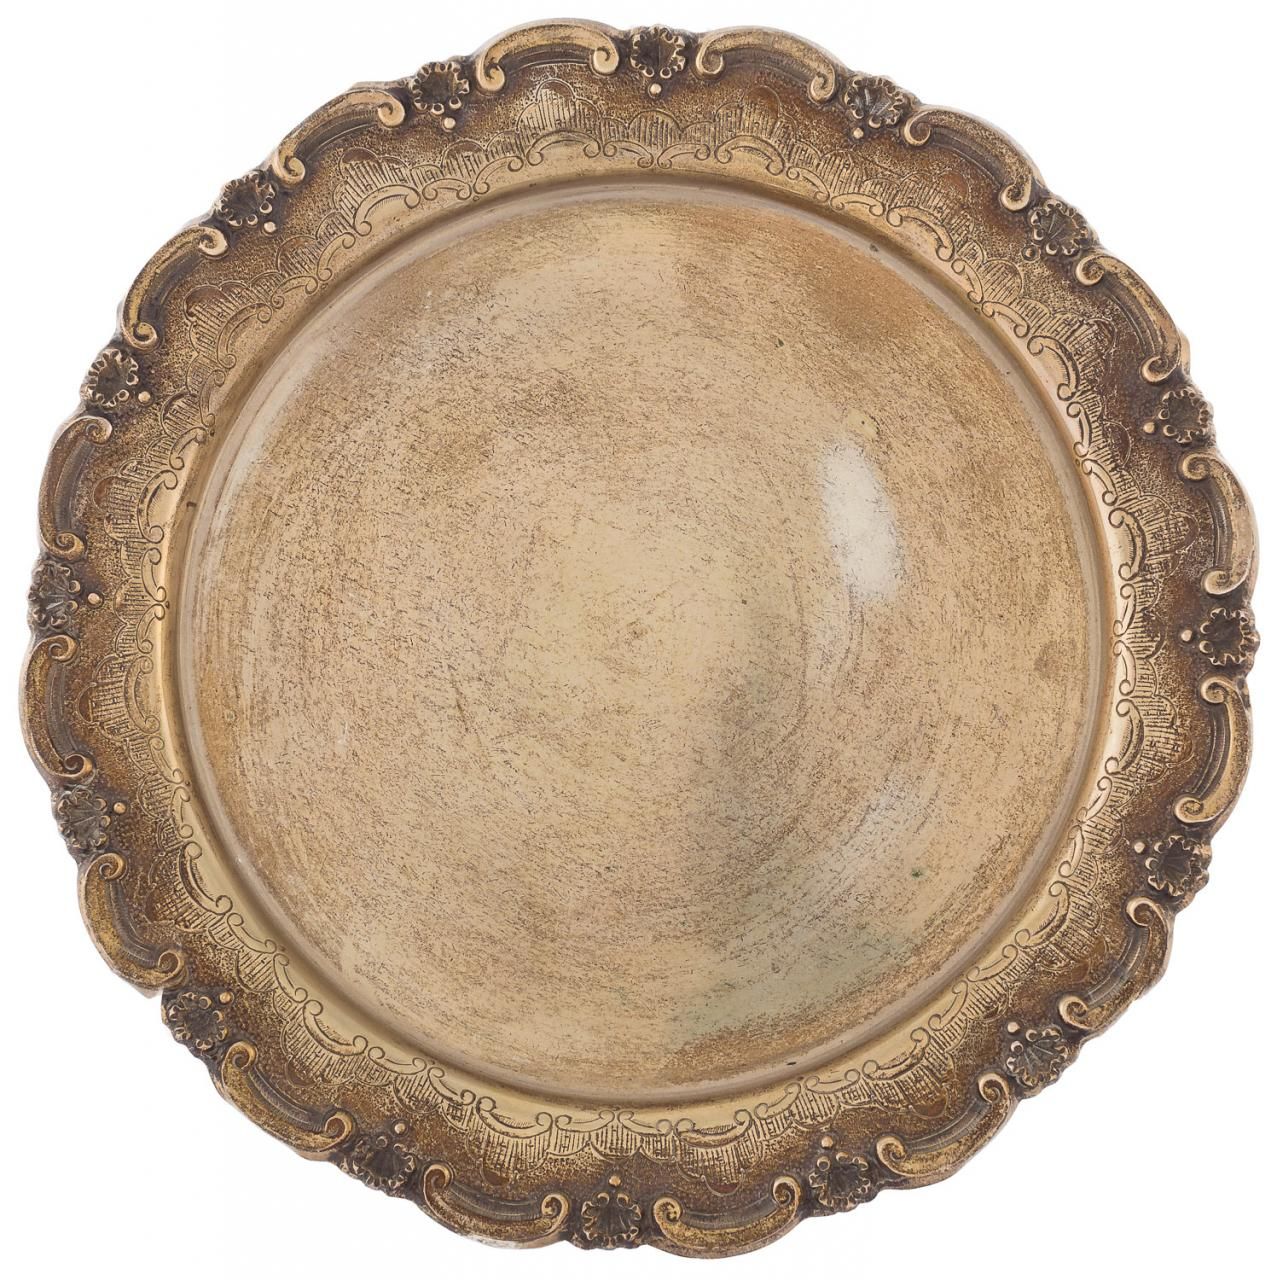 Null Bandeja circular en plata decorada con "ces" y veneras.

30 x 30 cm
Peso: 3&hellip;